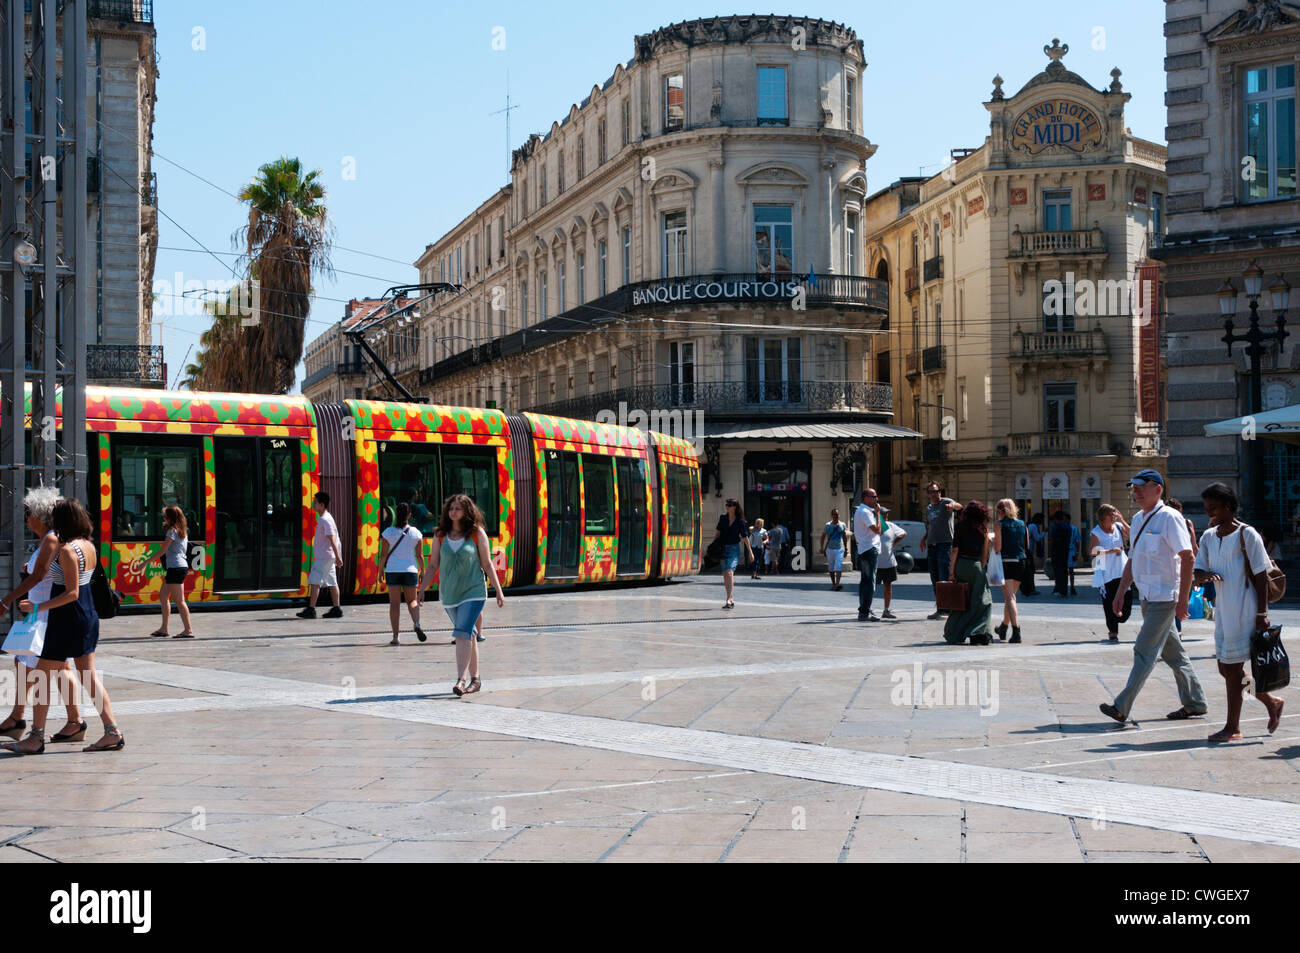 Eine bunte Straßenbahn in Place De La Comédie, Montpellier, Frankreich. Stockfoto